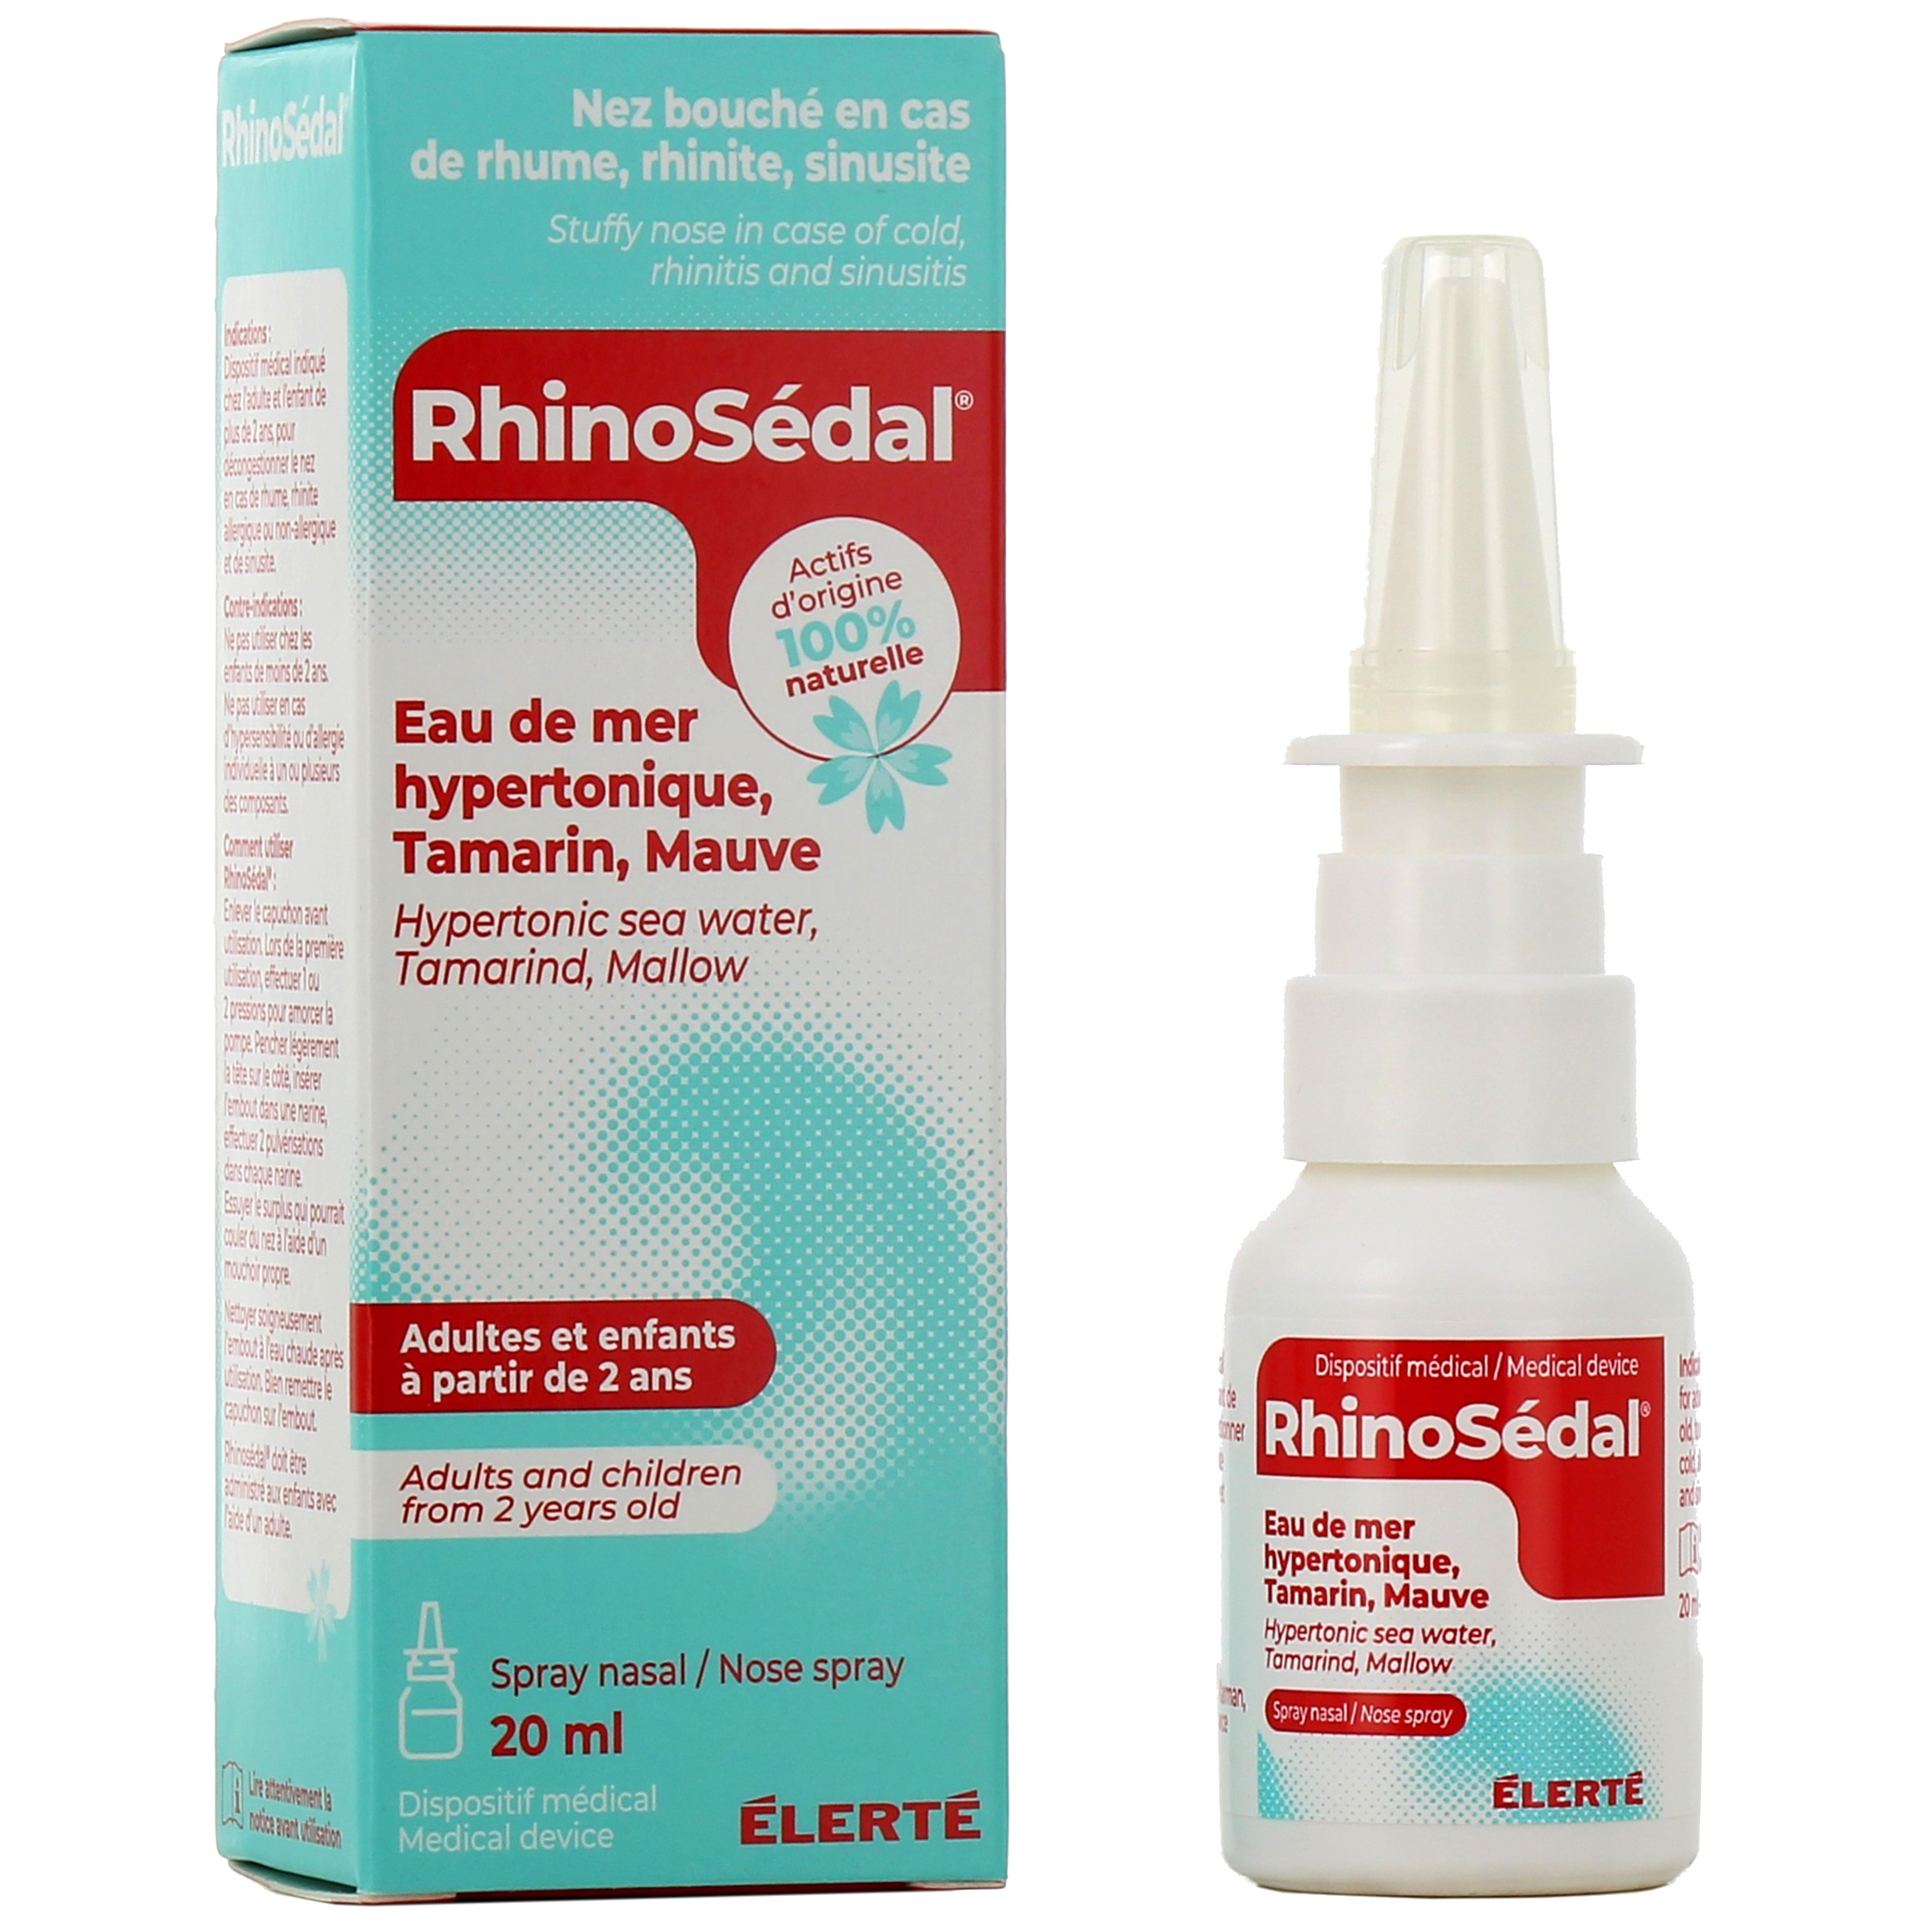 https://cdn.pharmaciedesdrakkars.com/media/images/products/rhinosedal-spray-nasal-solution-hypertonique-ides-pharma4-1702370664.jpg